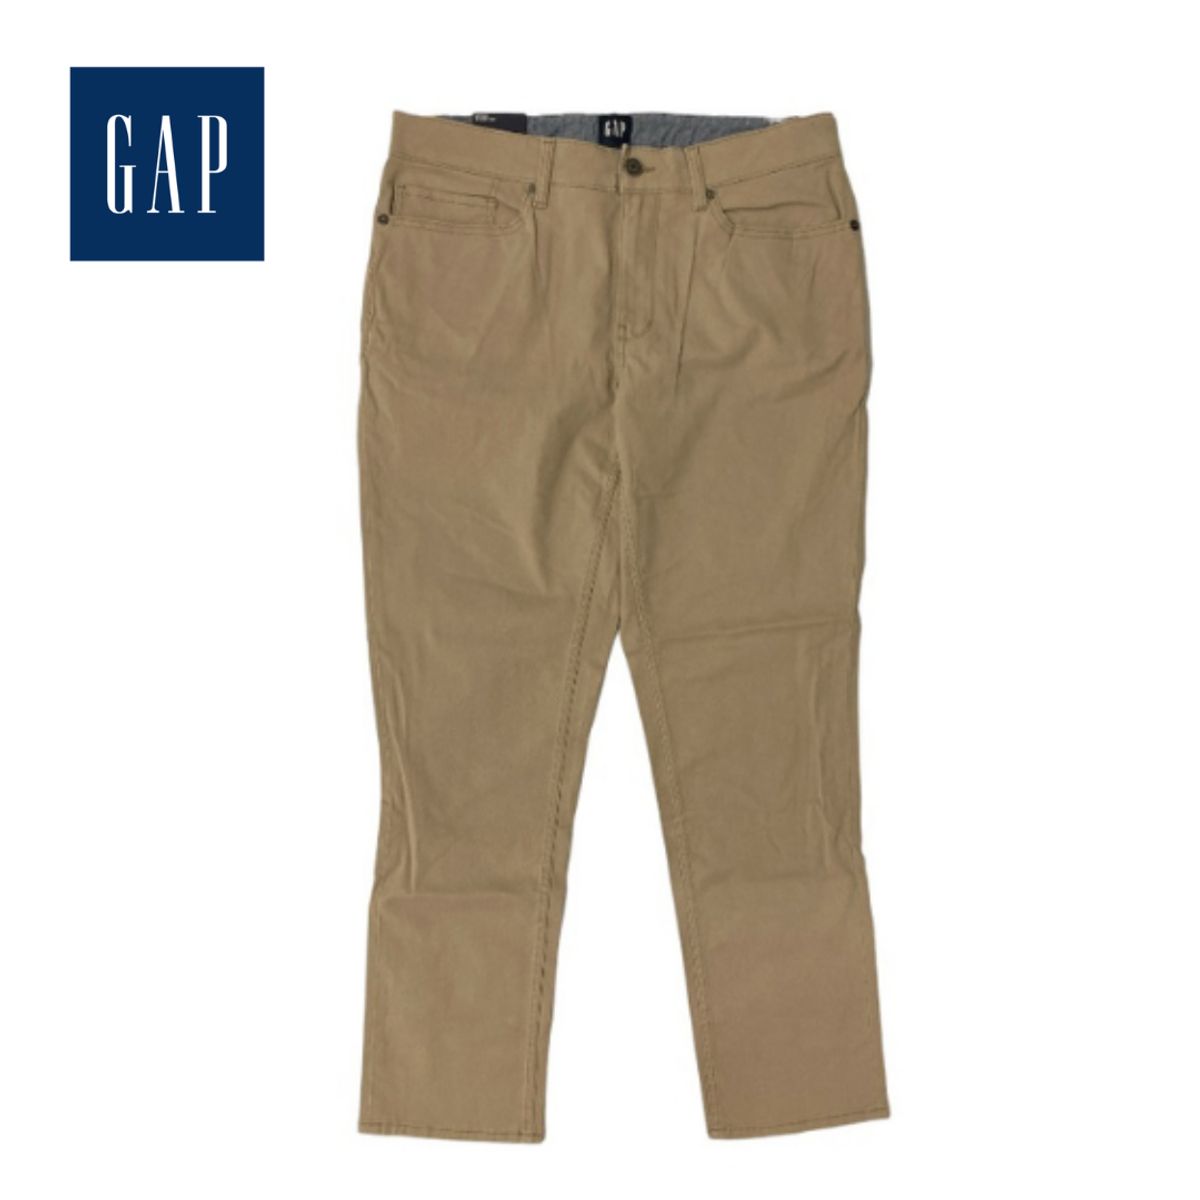 GAP Men's Twill Slim Fit Pant - 30 x 32 - Chinchilla